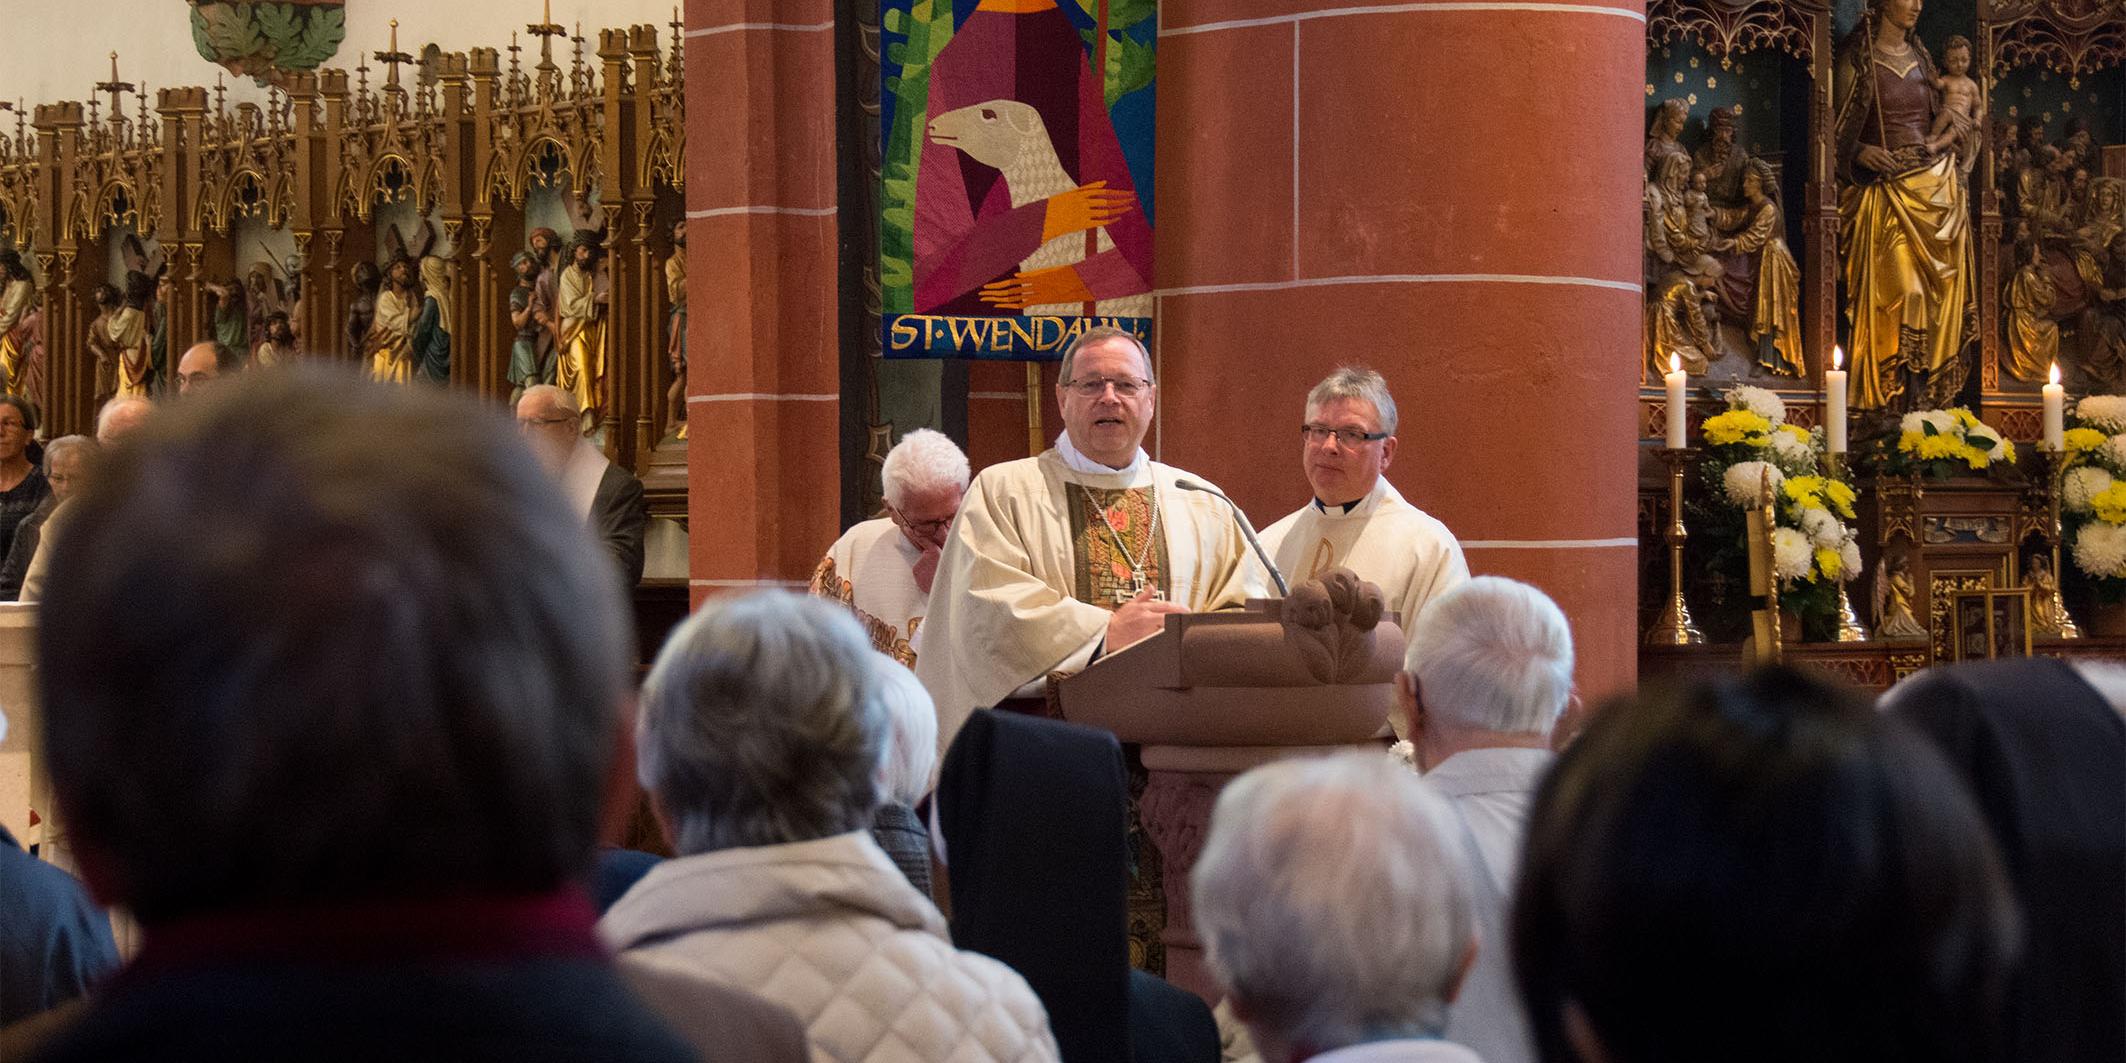 Pfarrer Klaus Leist (r) hatte zur diesjährigen Wendelinuswallfahrt Bischof Georg Bätzing (2.v.r.) eingeladen.